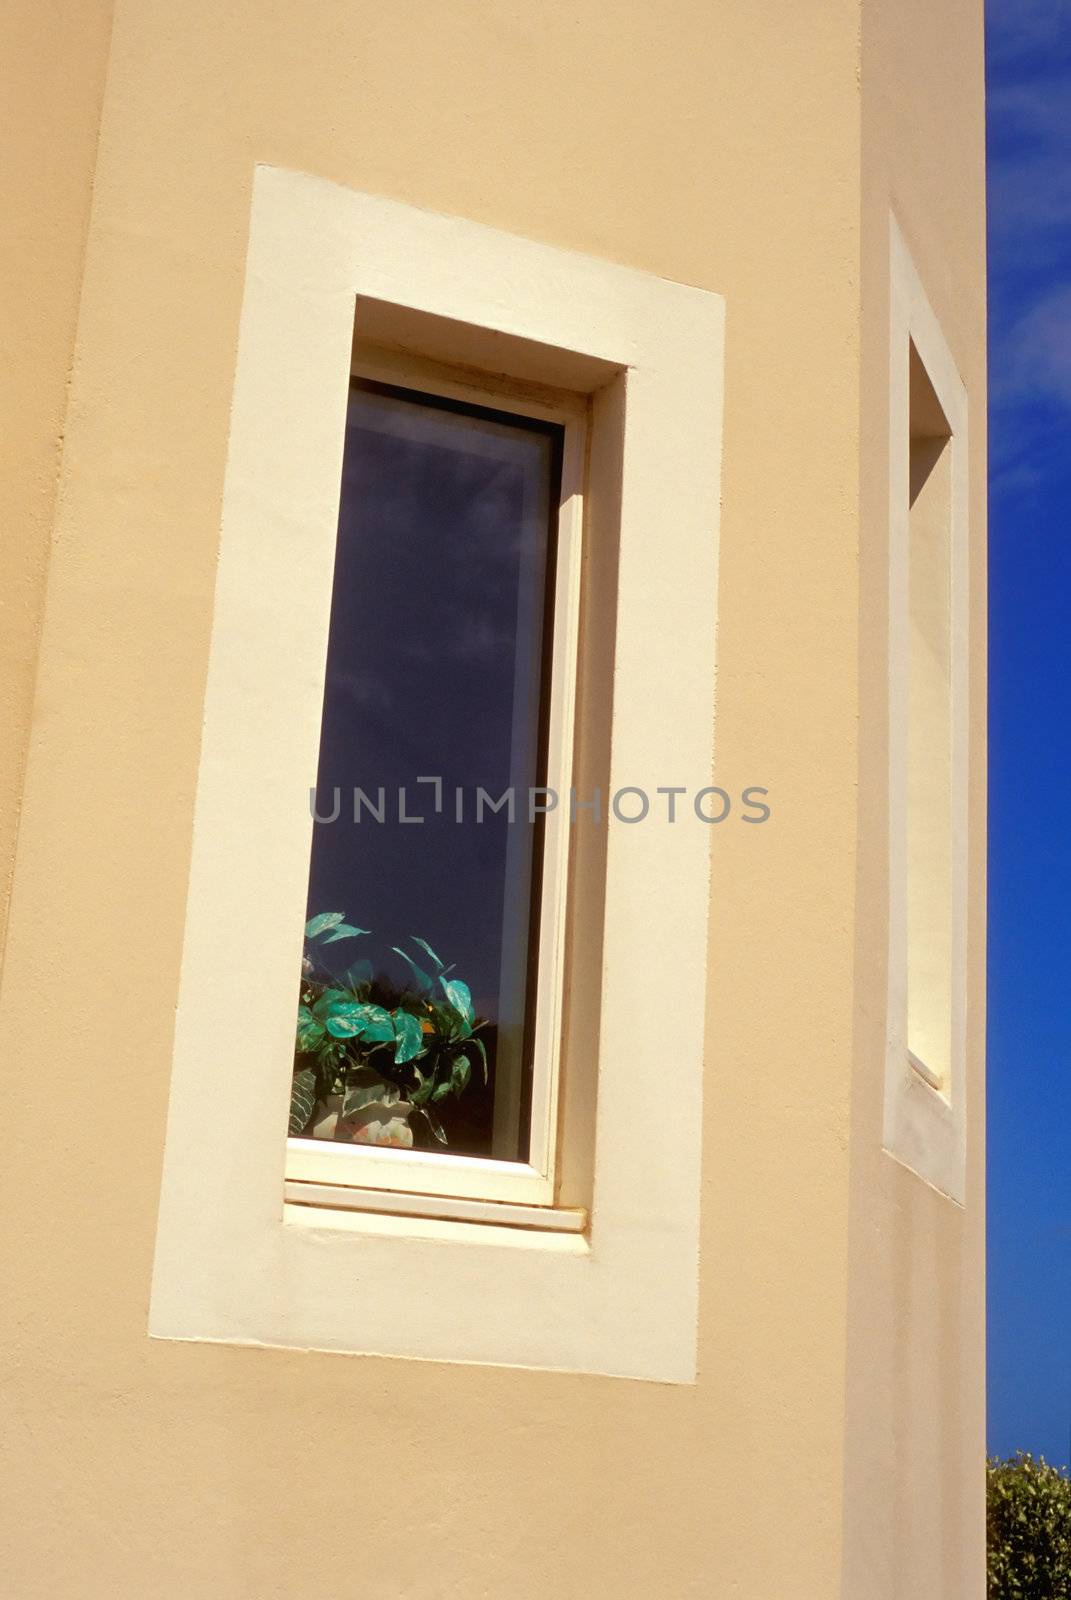 Slanted window by Geoarts